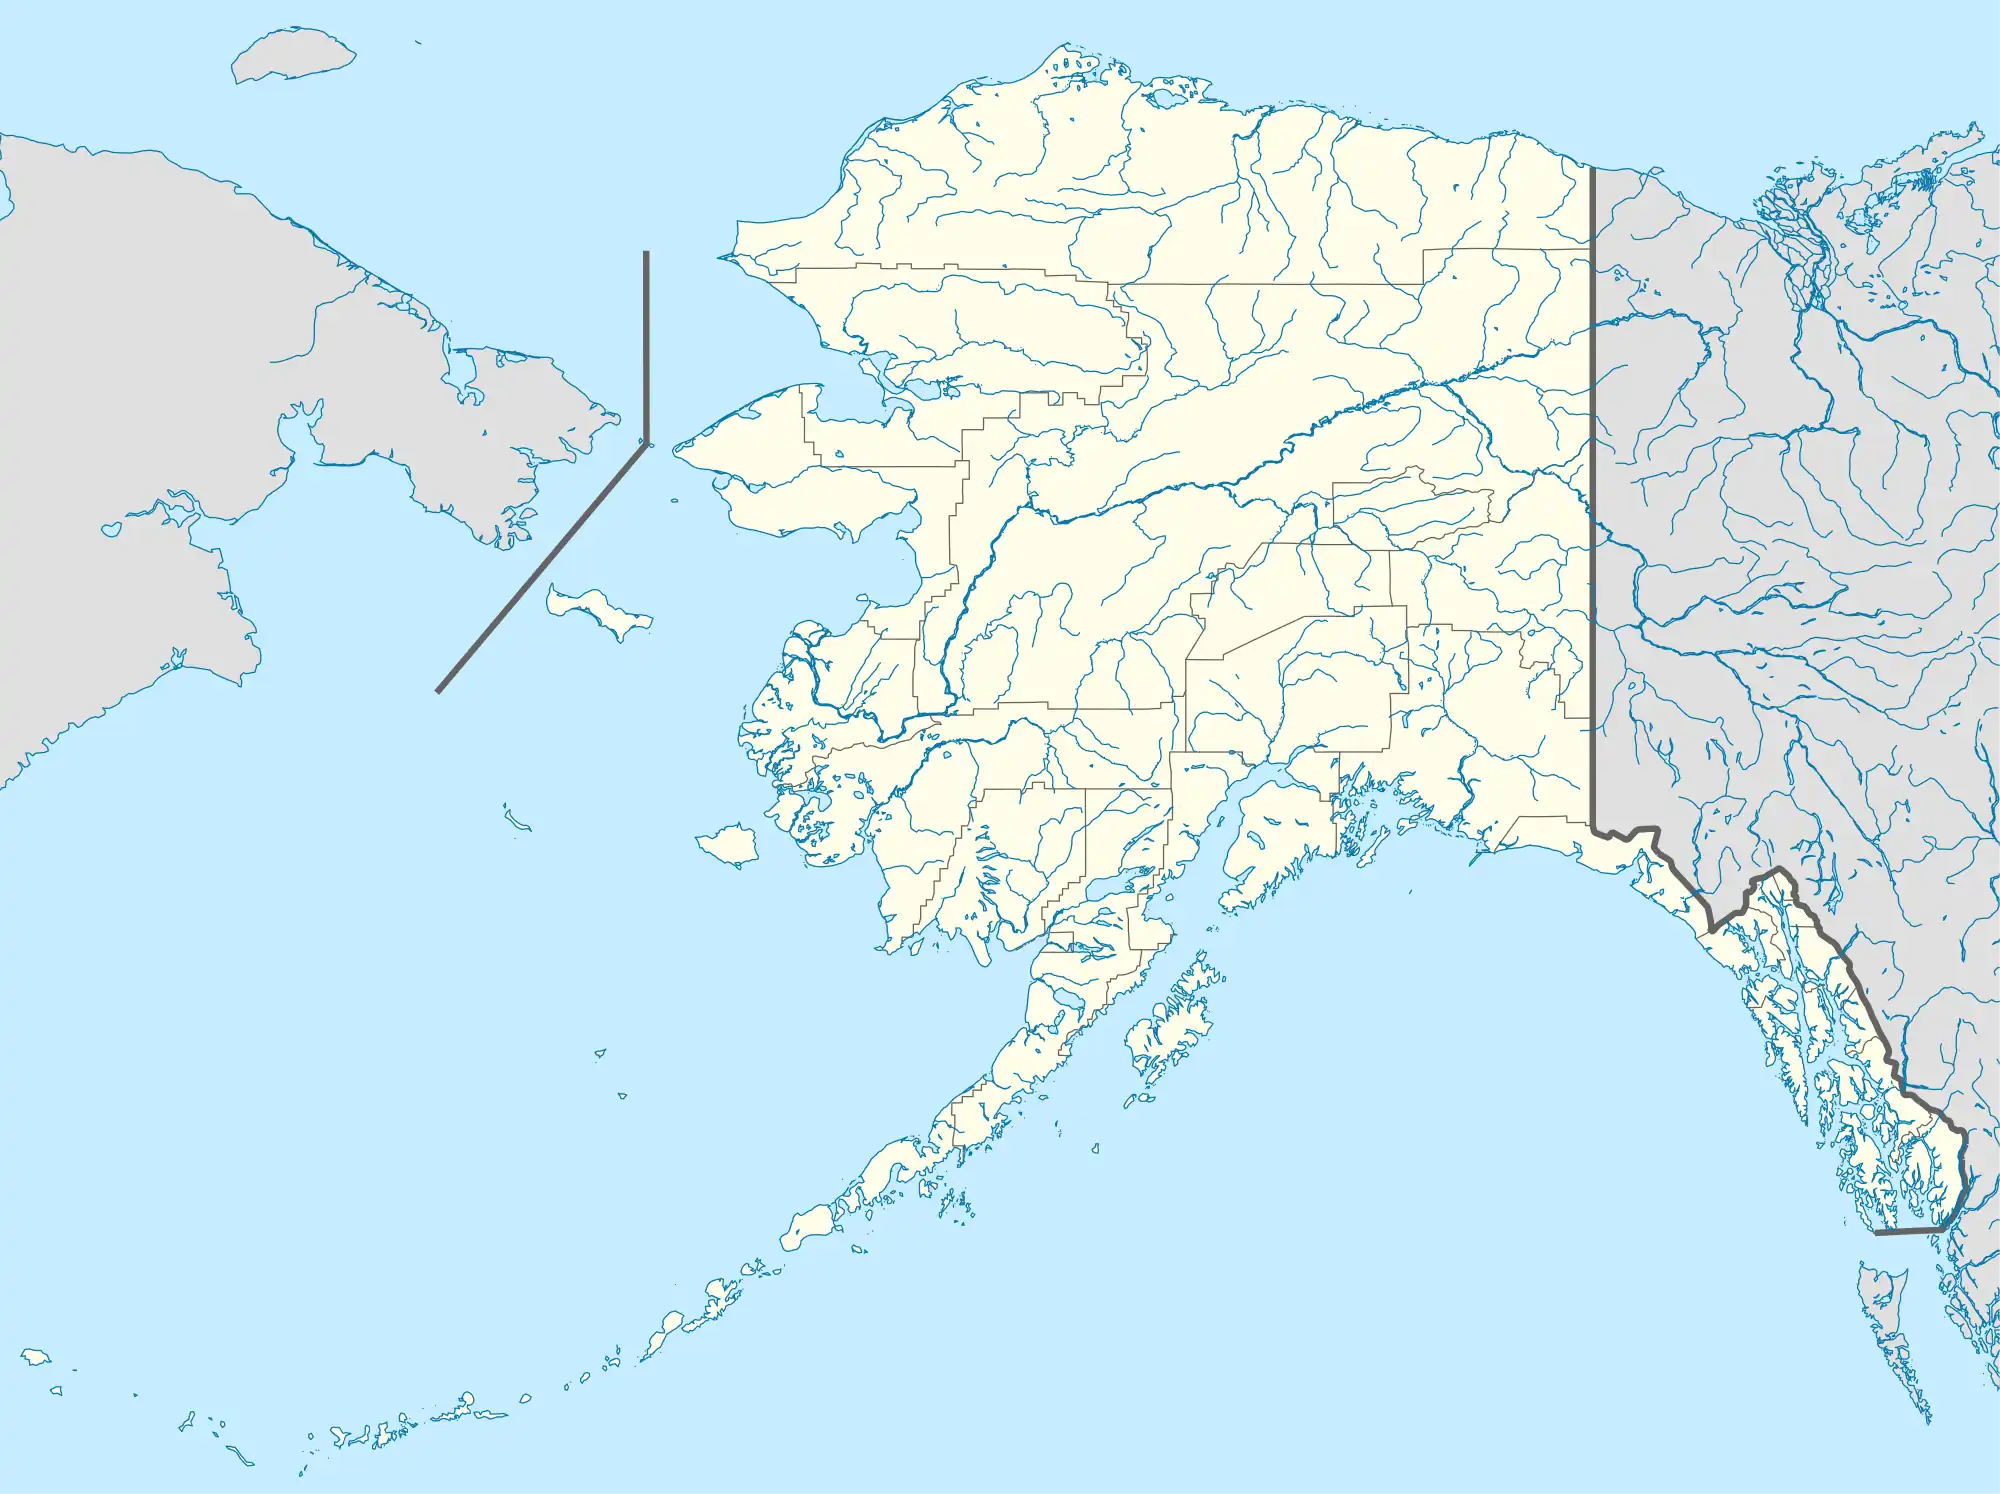 Kiska AAF is located in Alaska